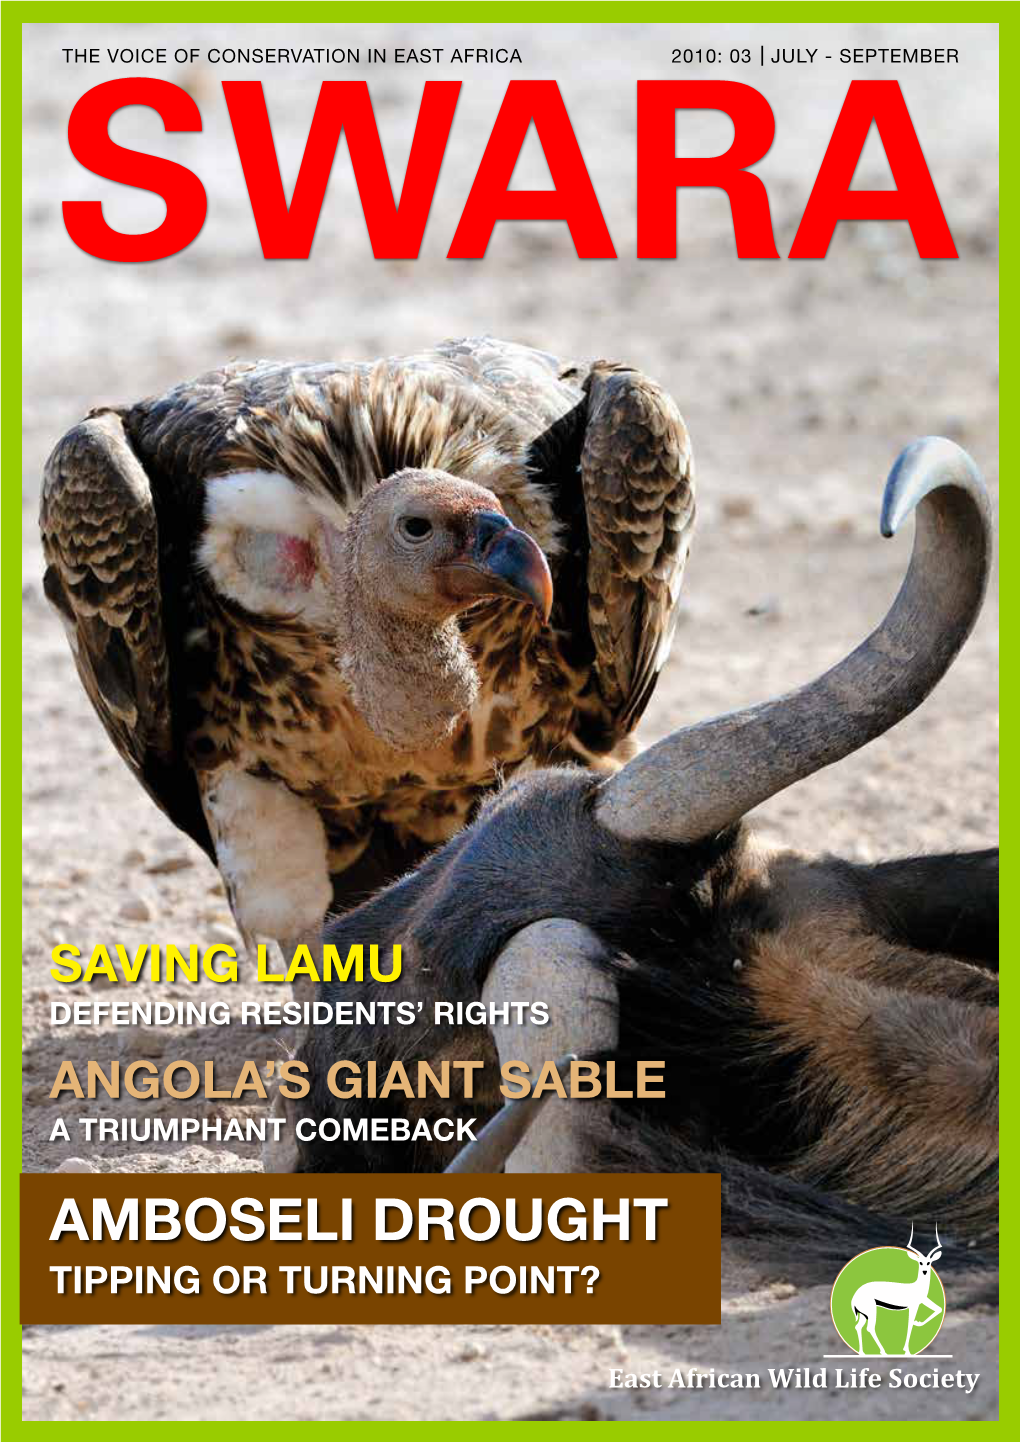 Amboseli Drought